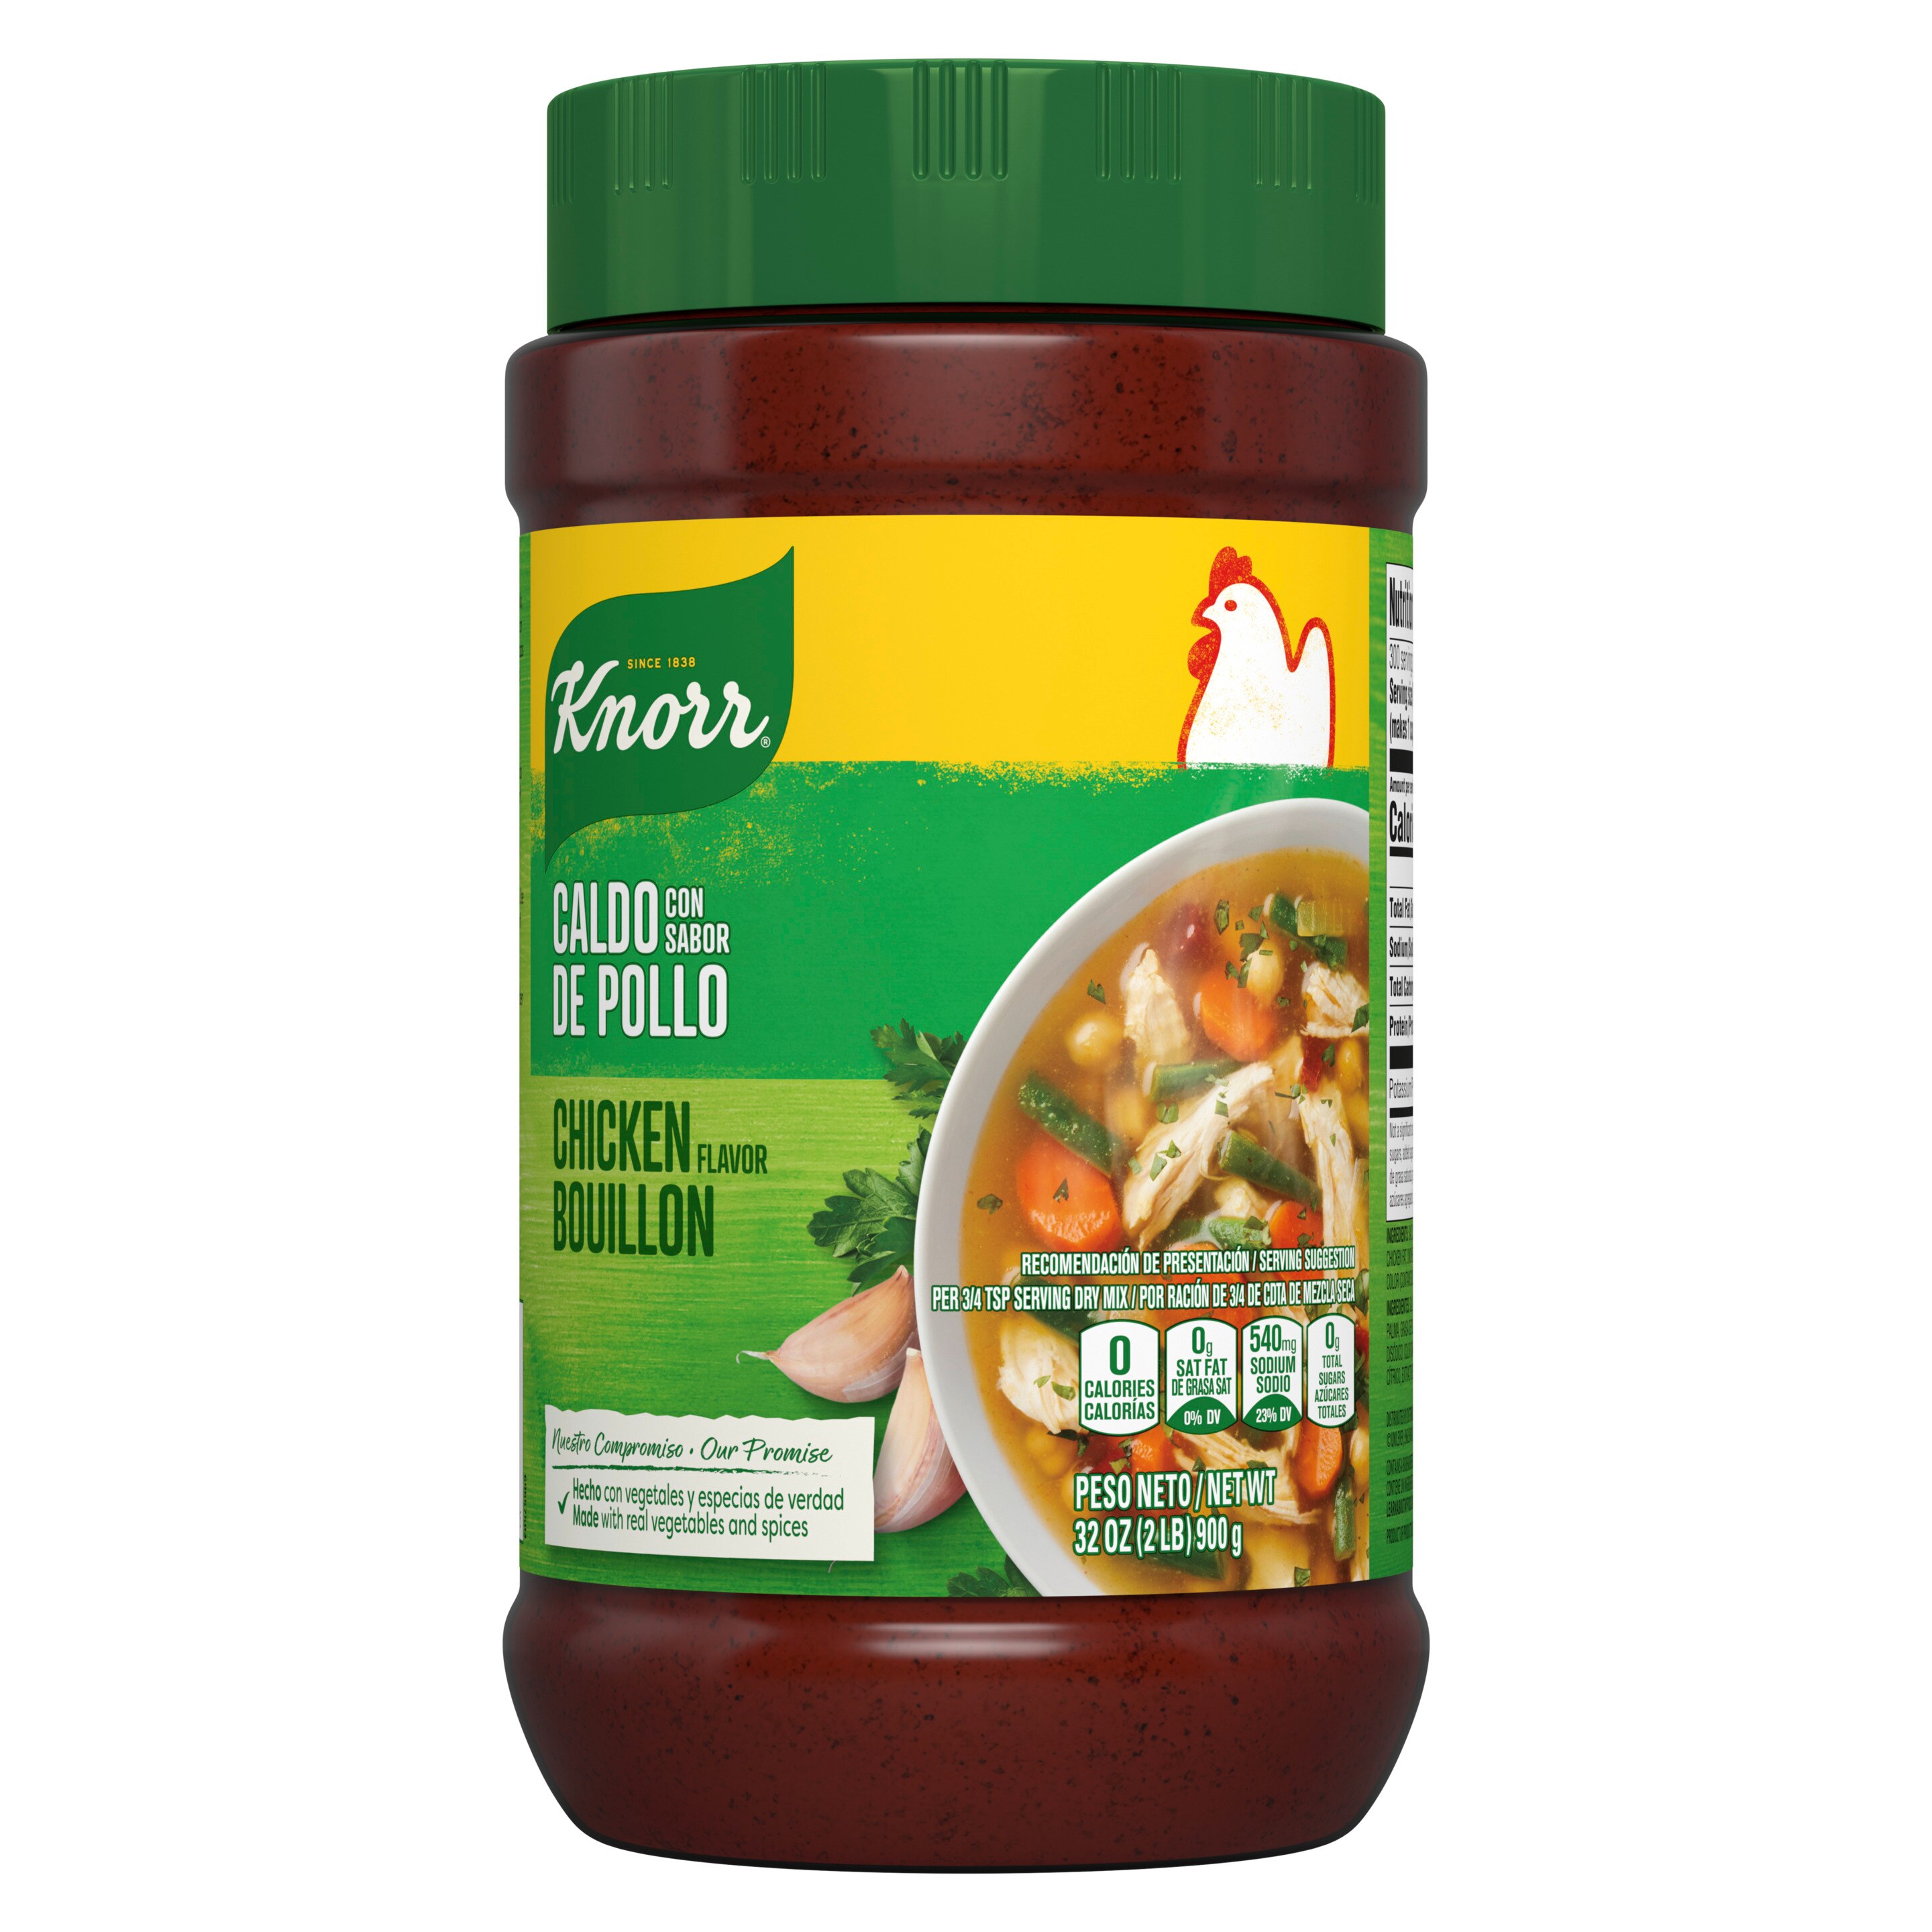 Knorr Bouillon Caldo Con Sabor De Pollo Chicken Flavor Bouillon 7.9 Ounces